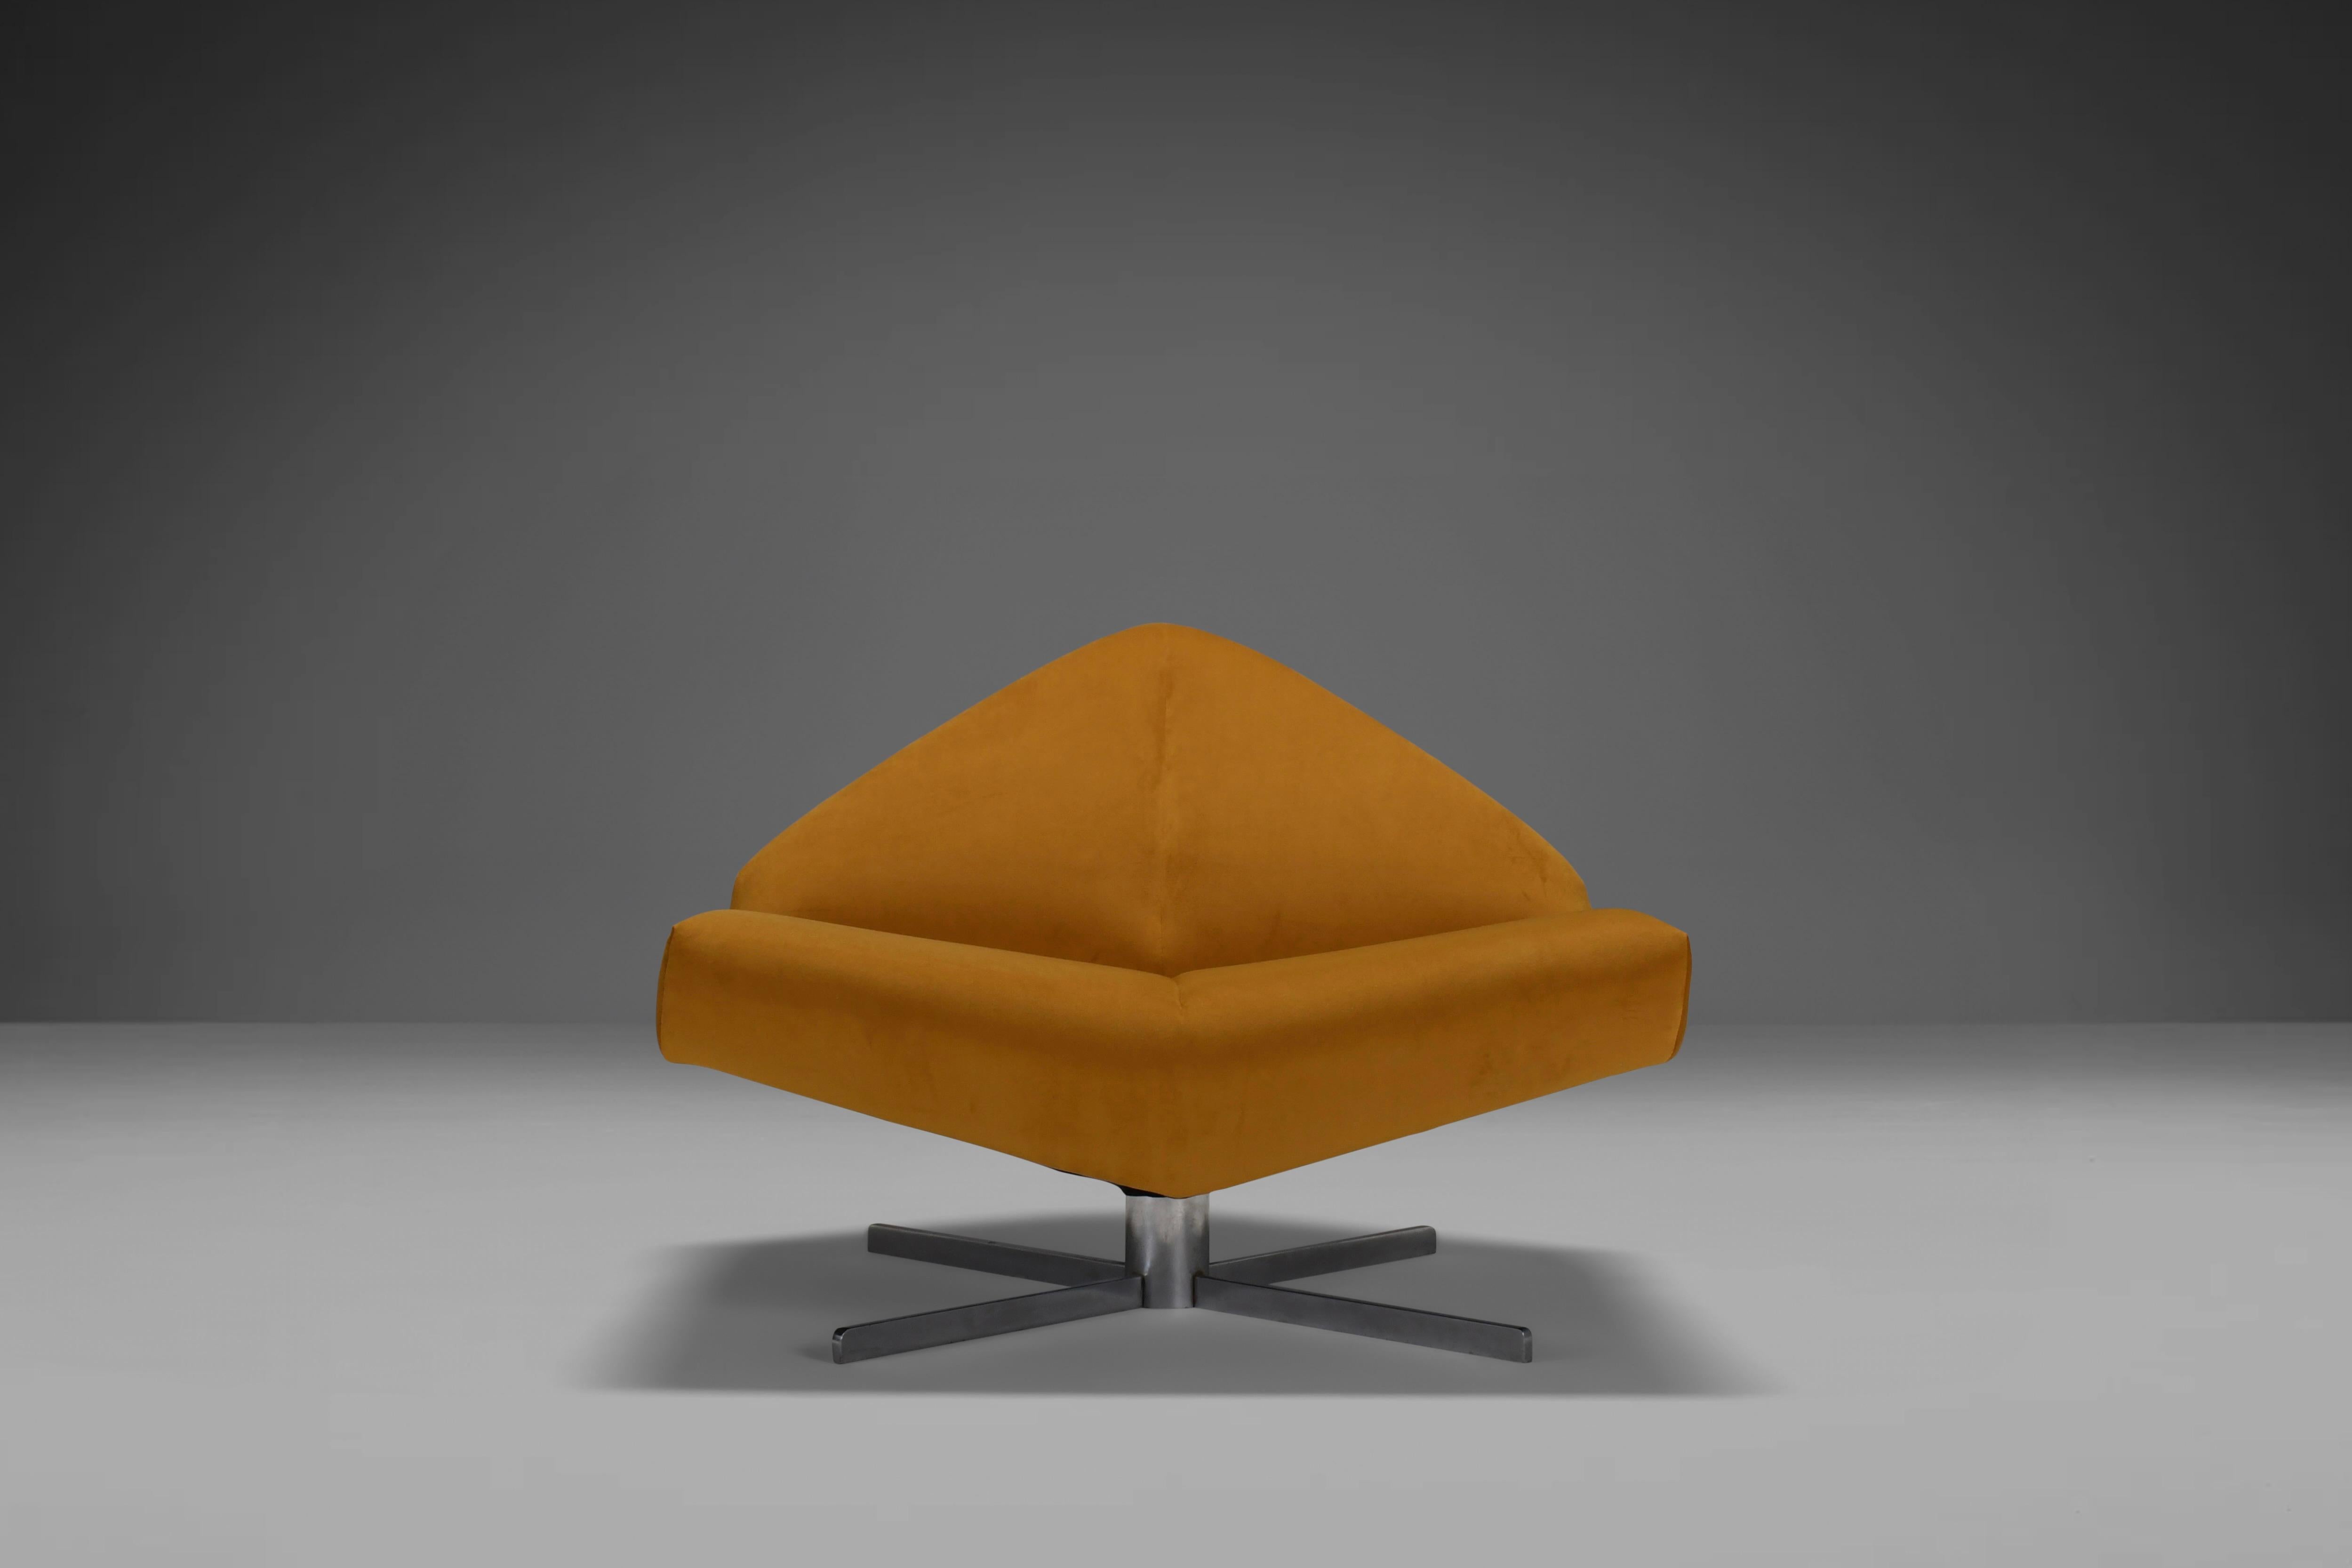 Seltener 'Brasilia' Stuhl in sehr gutem Zustand.

Hergestellt von Schmieder Denmark in den 1960er Jahren.

Dieser Loungesessel hat eine exzentrische Form und eine geometrische Silhouette, was ihn noch seltener macht. Das Design wird durch eine Naht